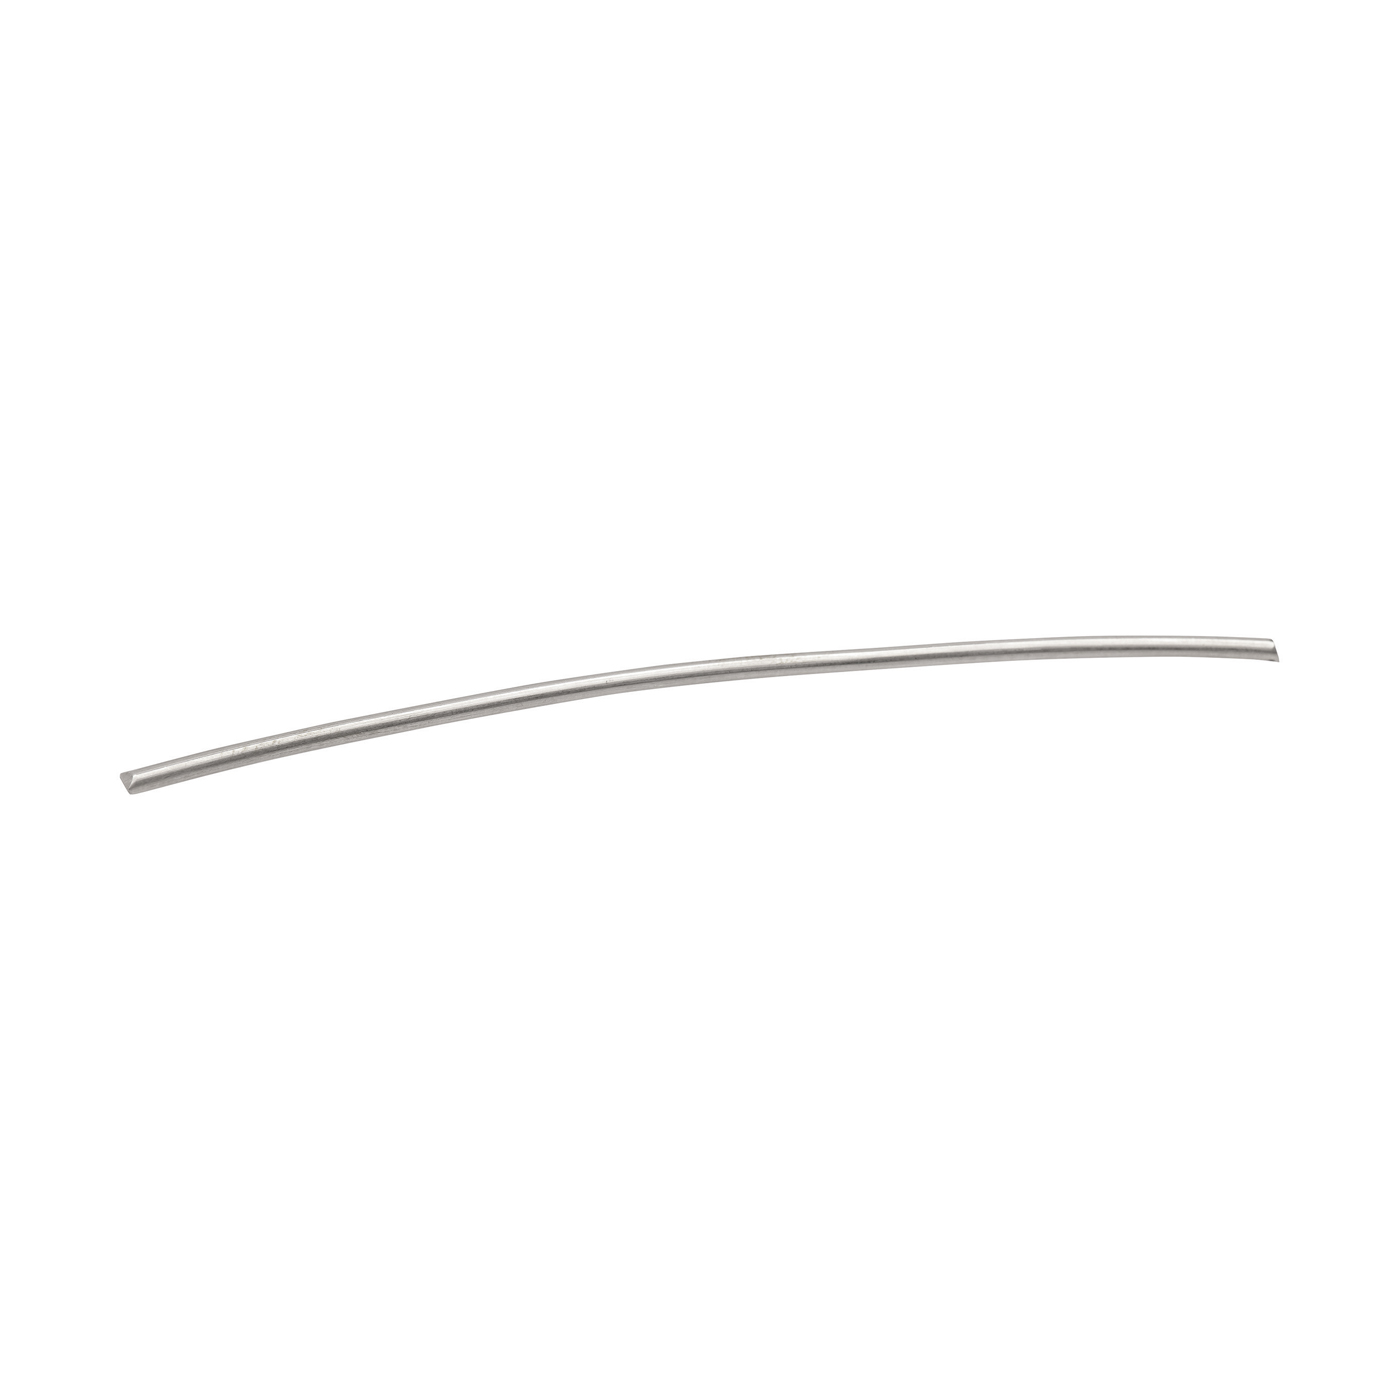 Round Wire, 760WG, ø 1 mm, Length 15 cm - 1 piece